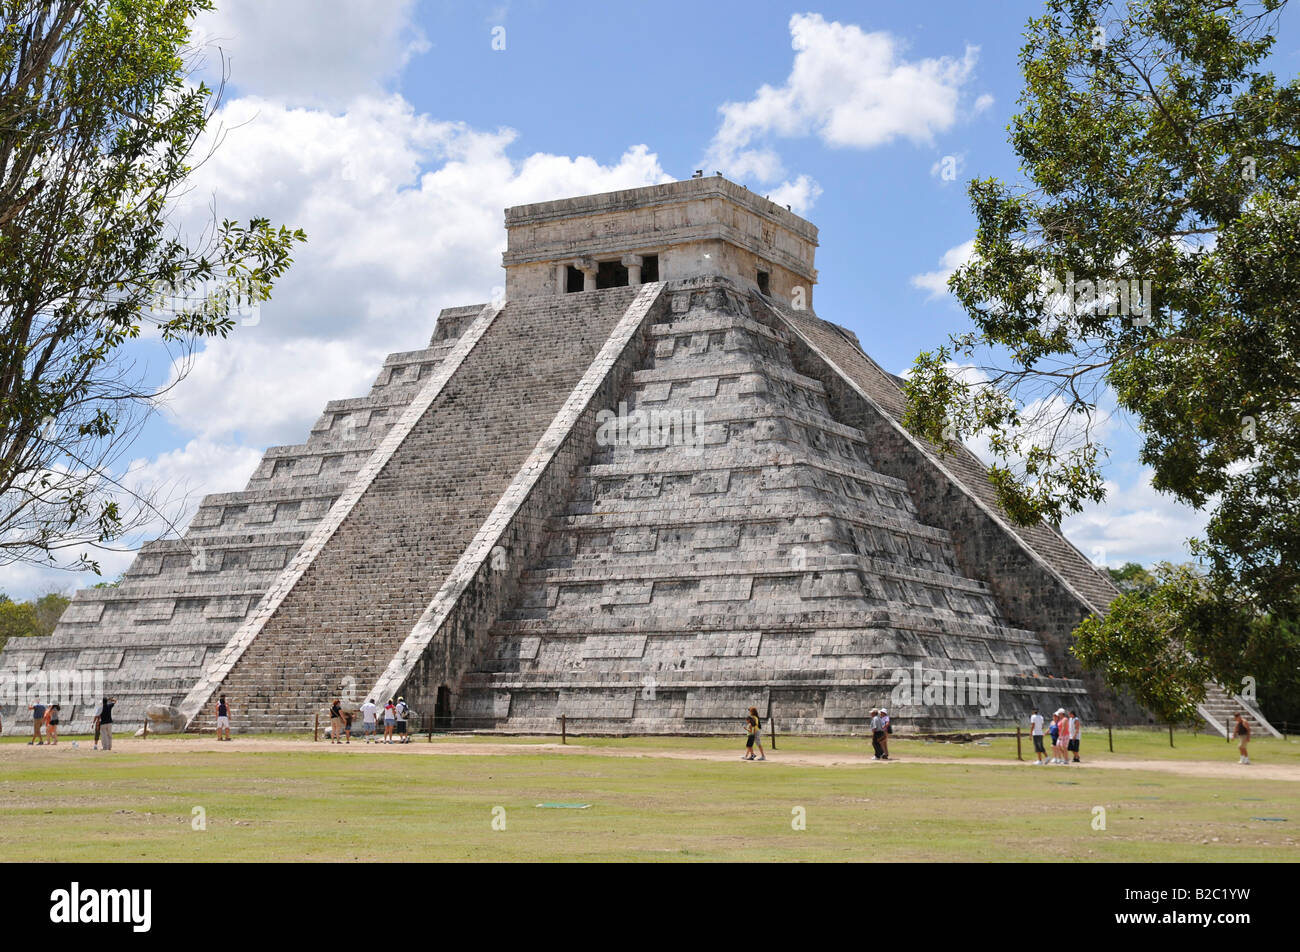 Zona Nord, Chichen-itza, neues Weltwunder, archäologische Ausgrabungen der Maya und Toltec, Halbinsel Yucatan, Mexiko, Centra Stockfoto